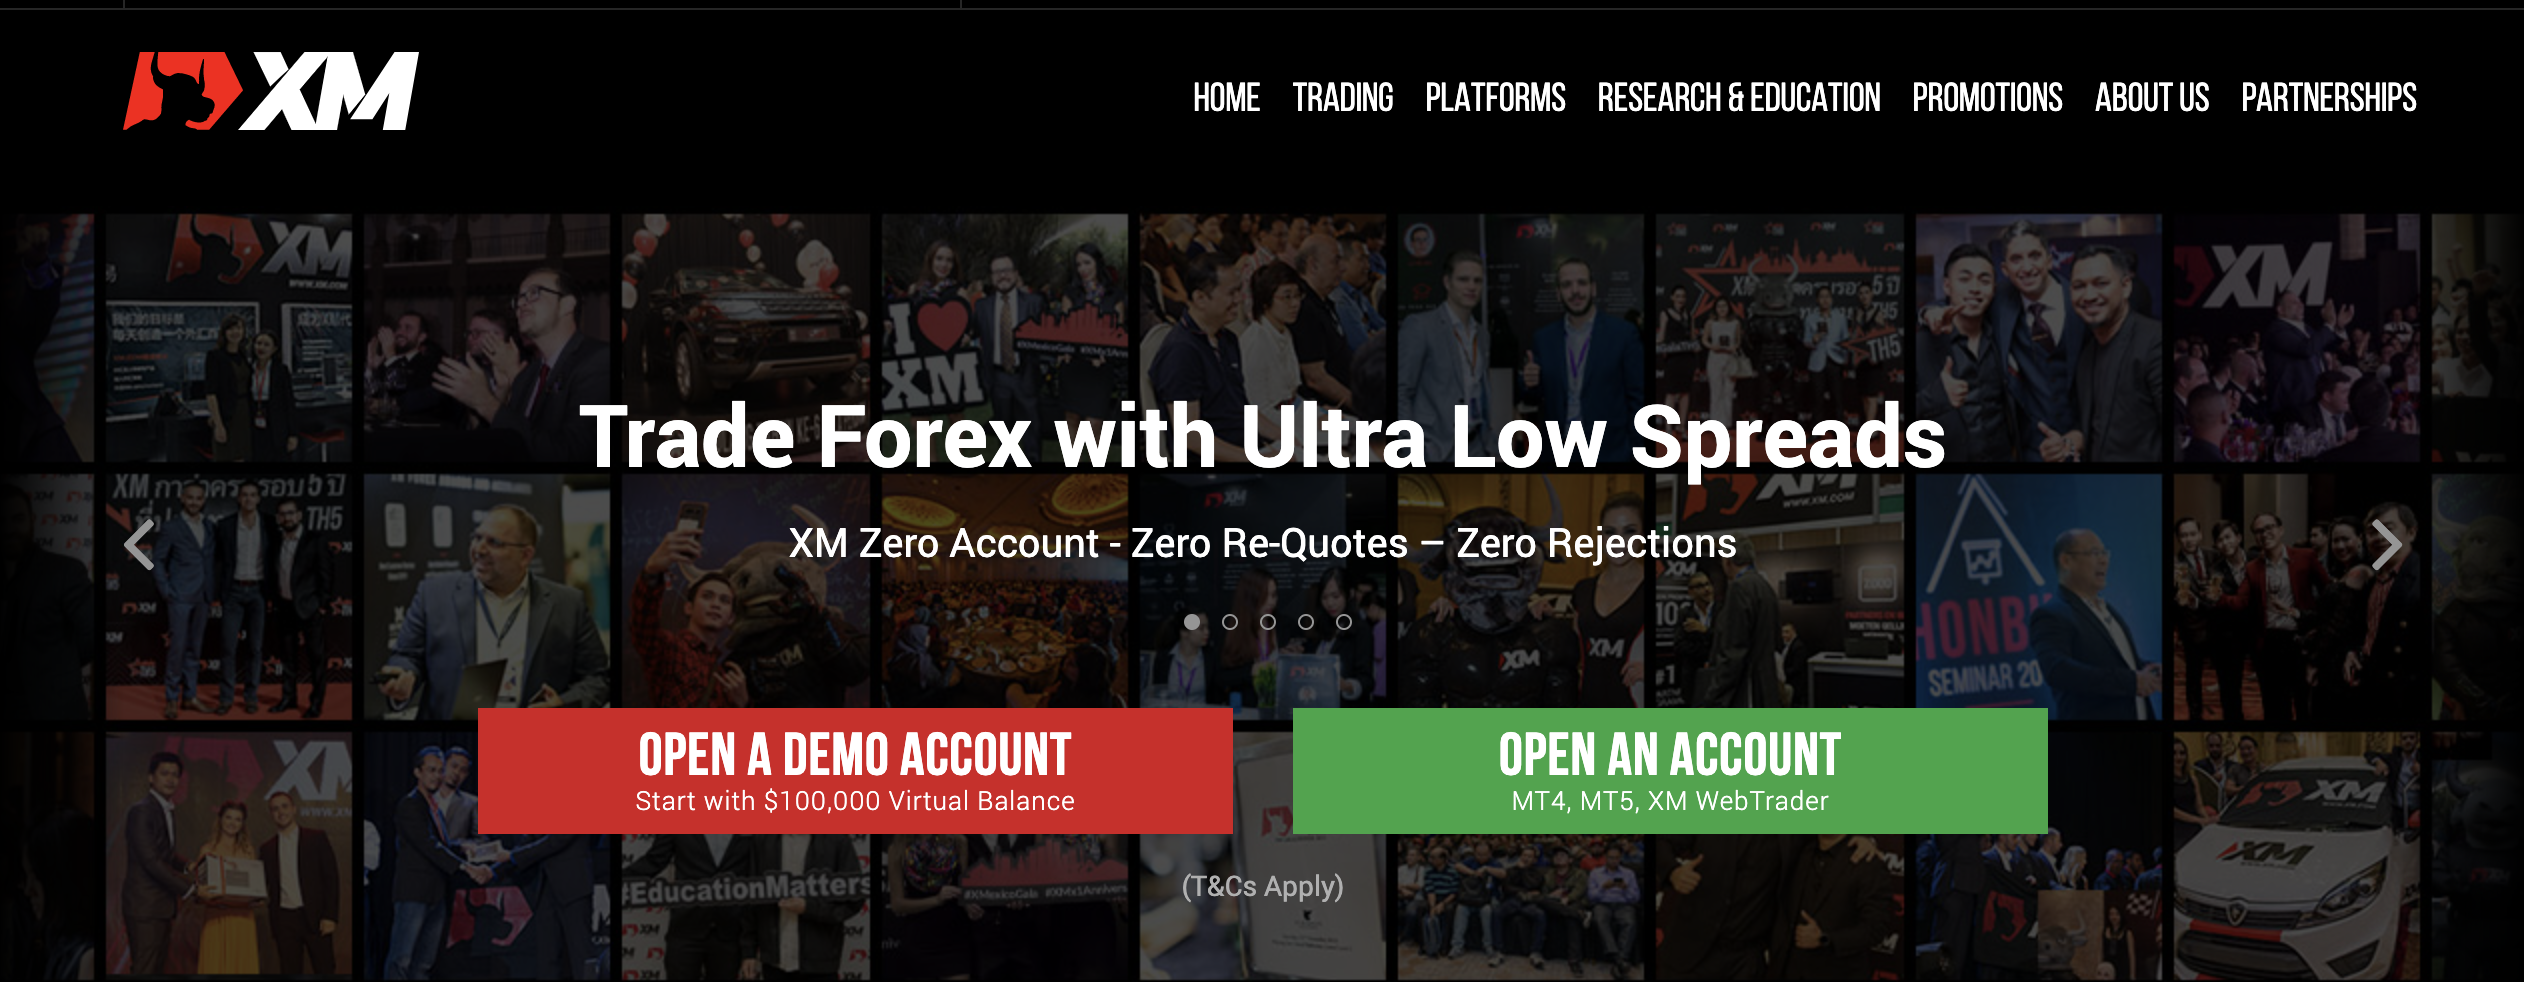 Forex brokeri XM'nin resmi web sitesi